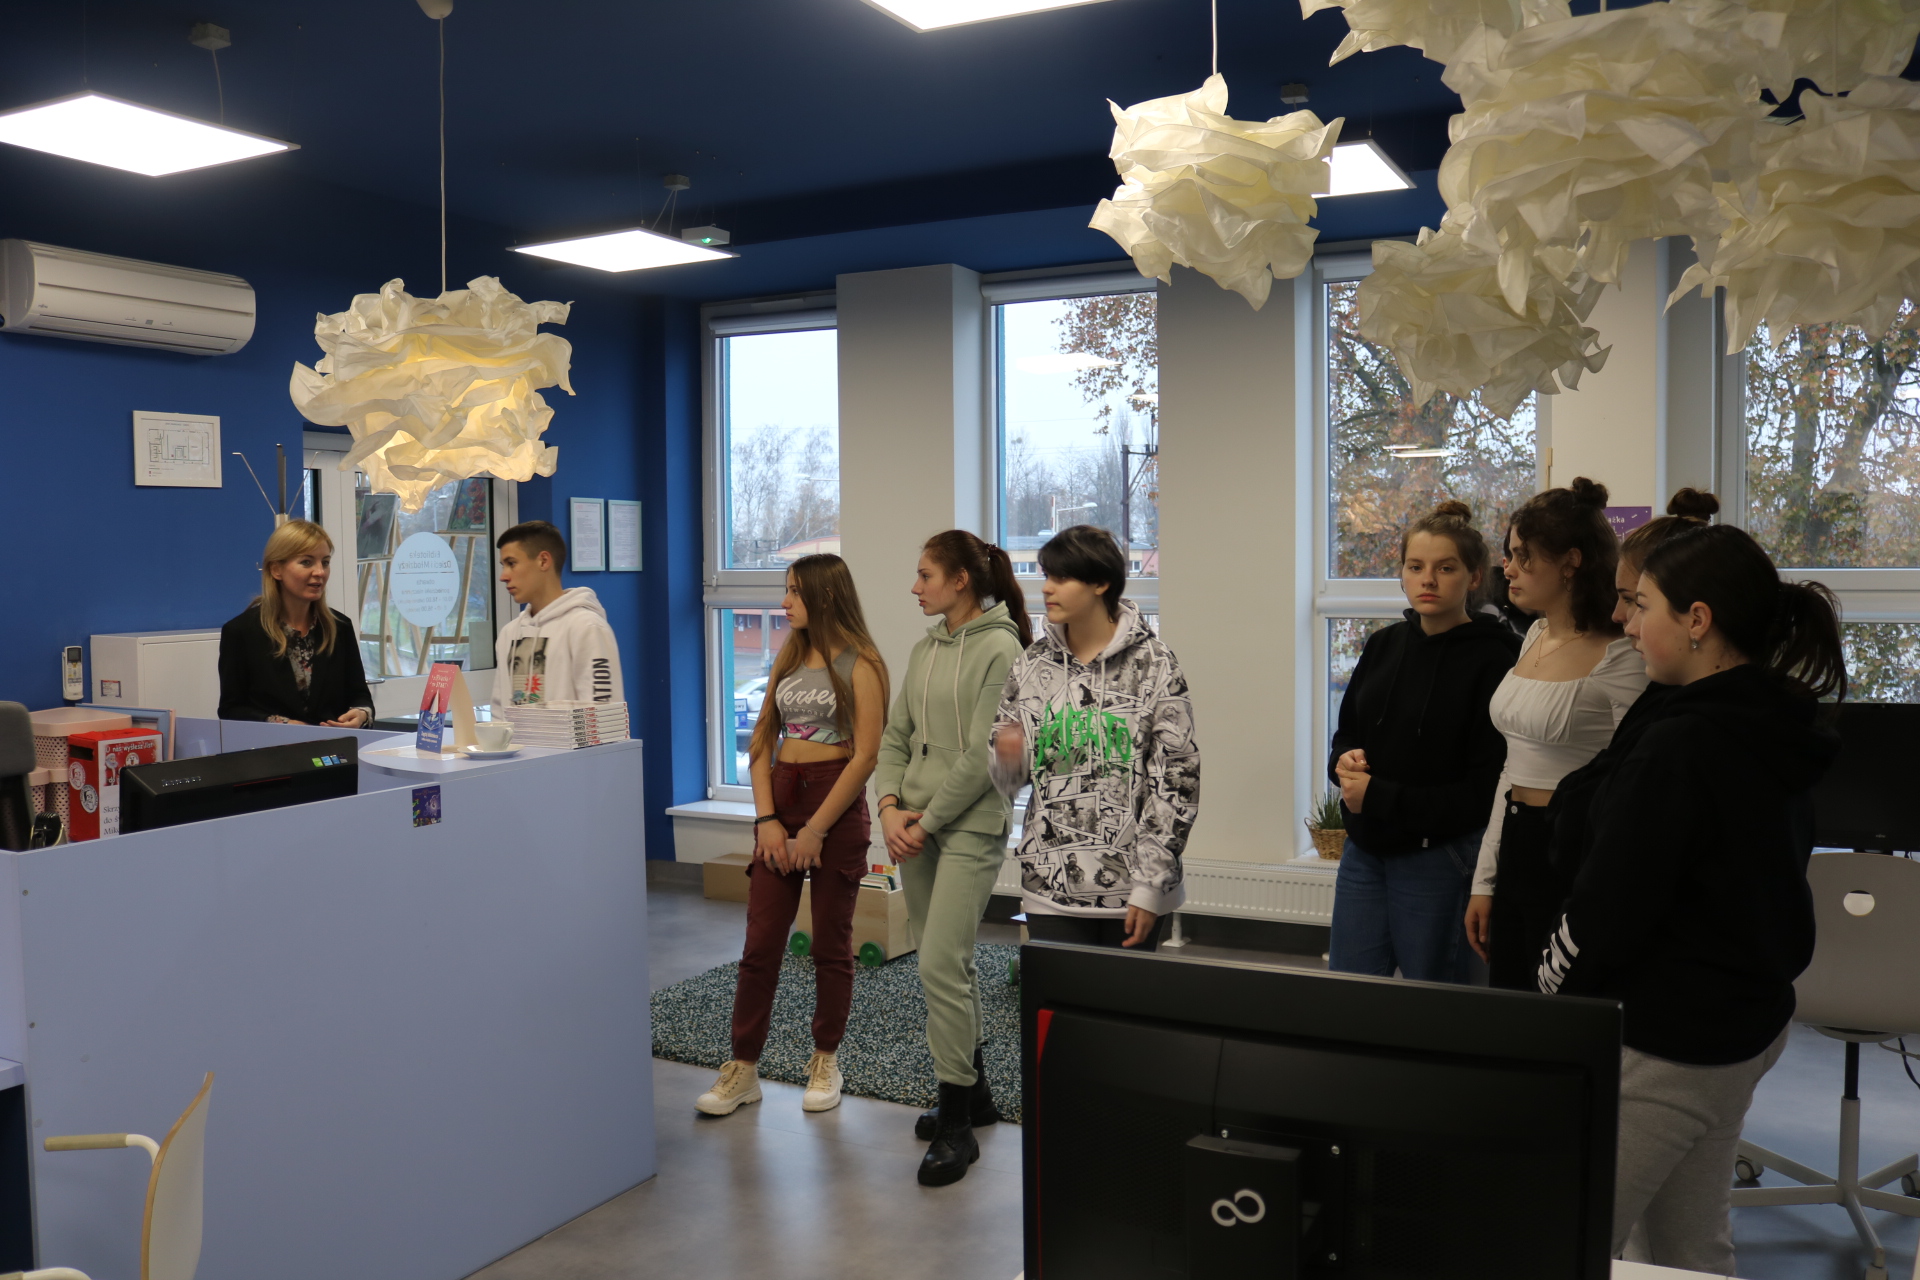 Młodzieży z Ukrainy z klasy 1-oddziału przygotowawczego zwiedza bibliotekę